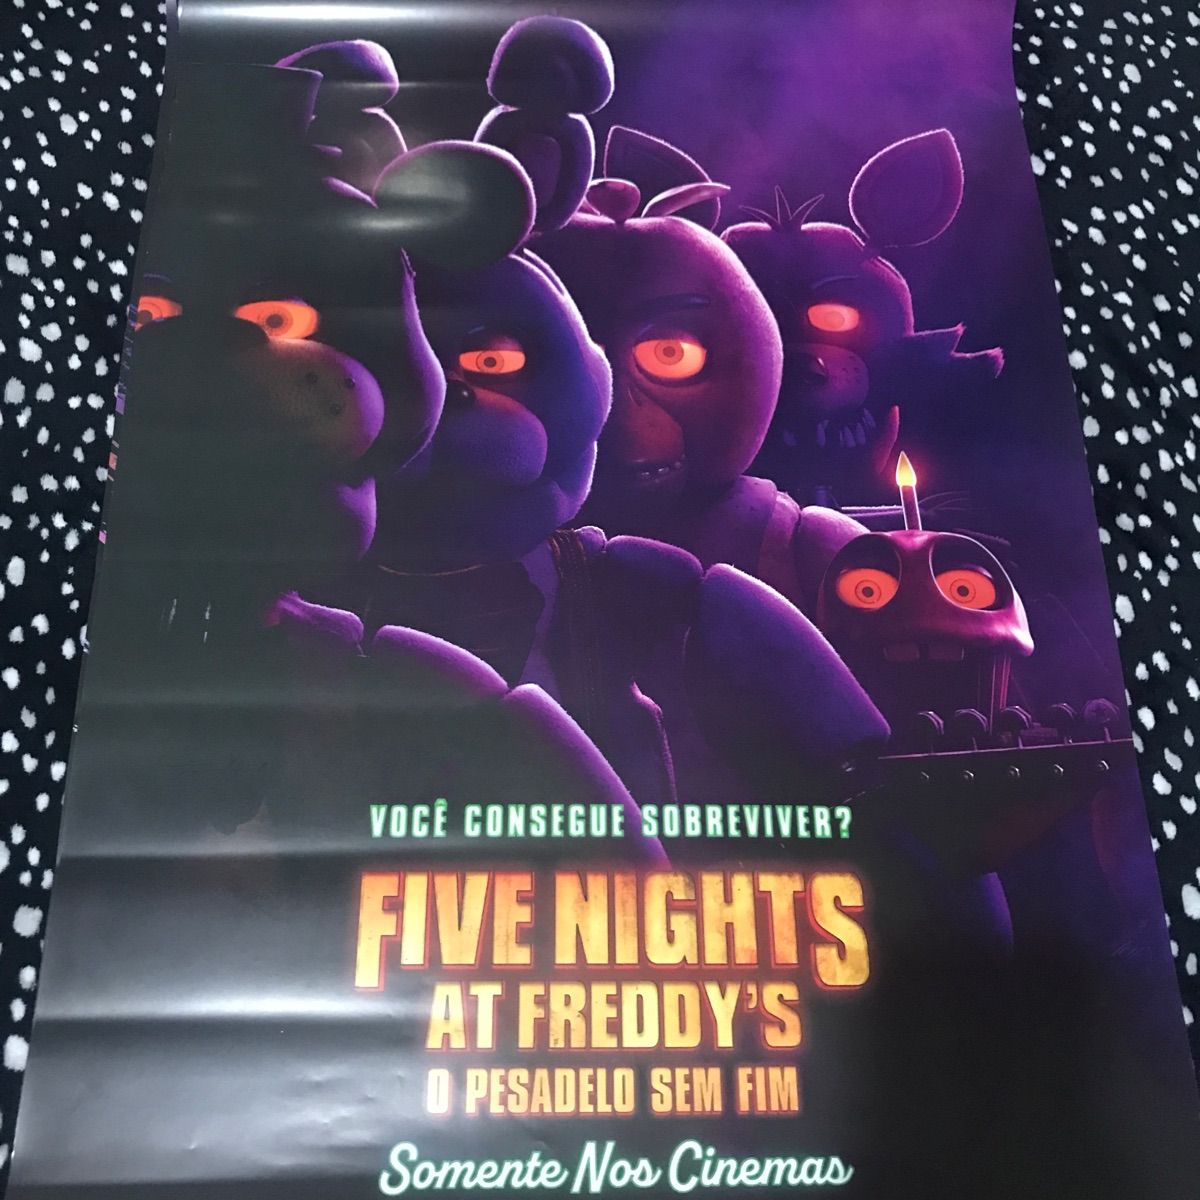 Five Nights At Freddy's - O Pesadelo Sem Fim: uma análise do